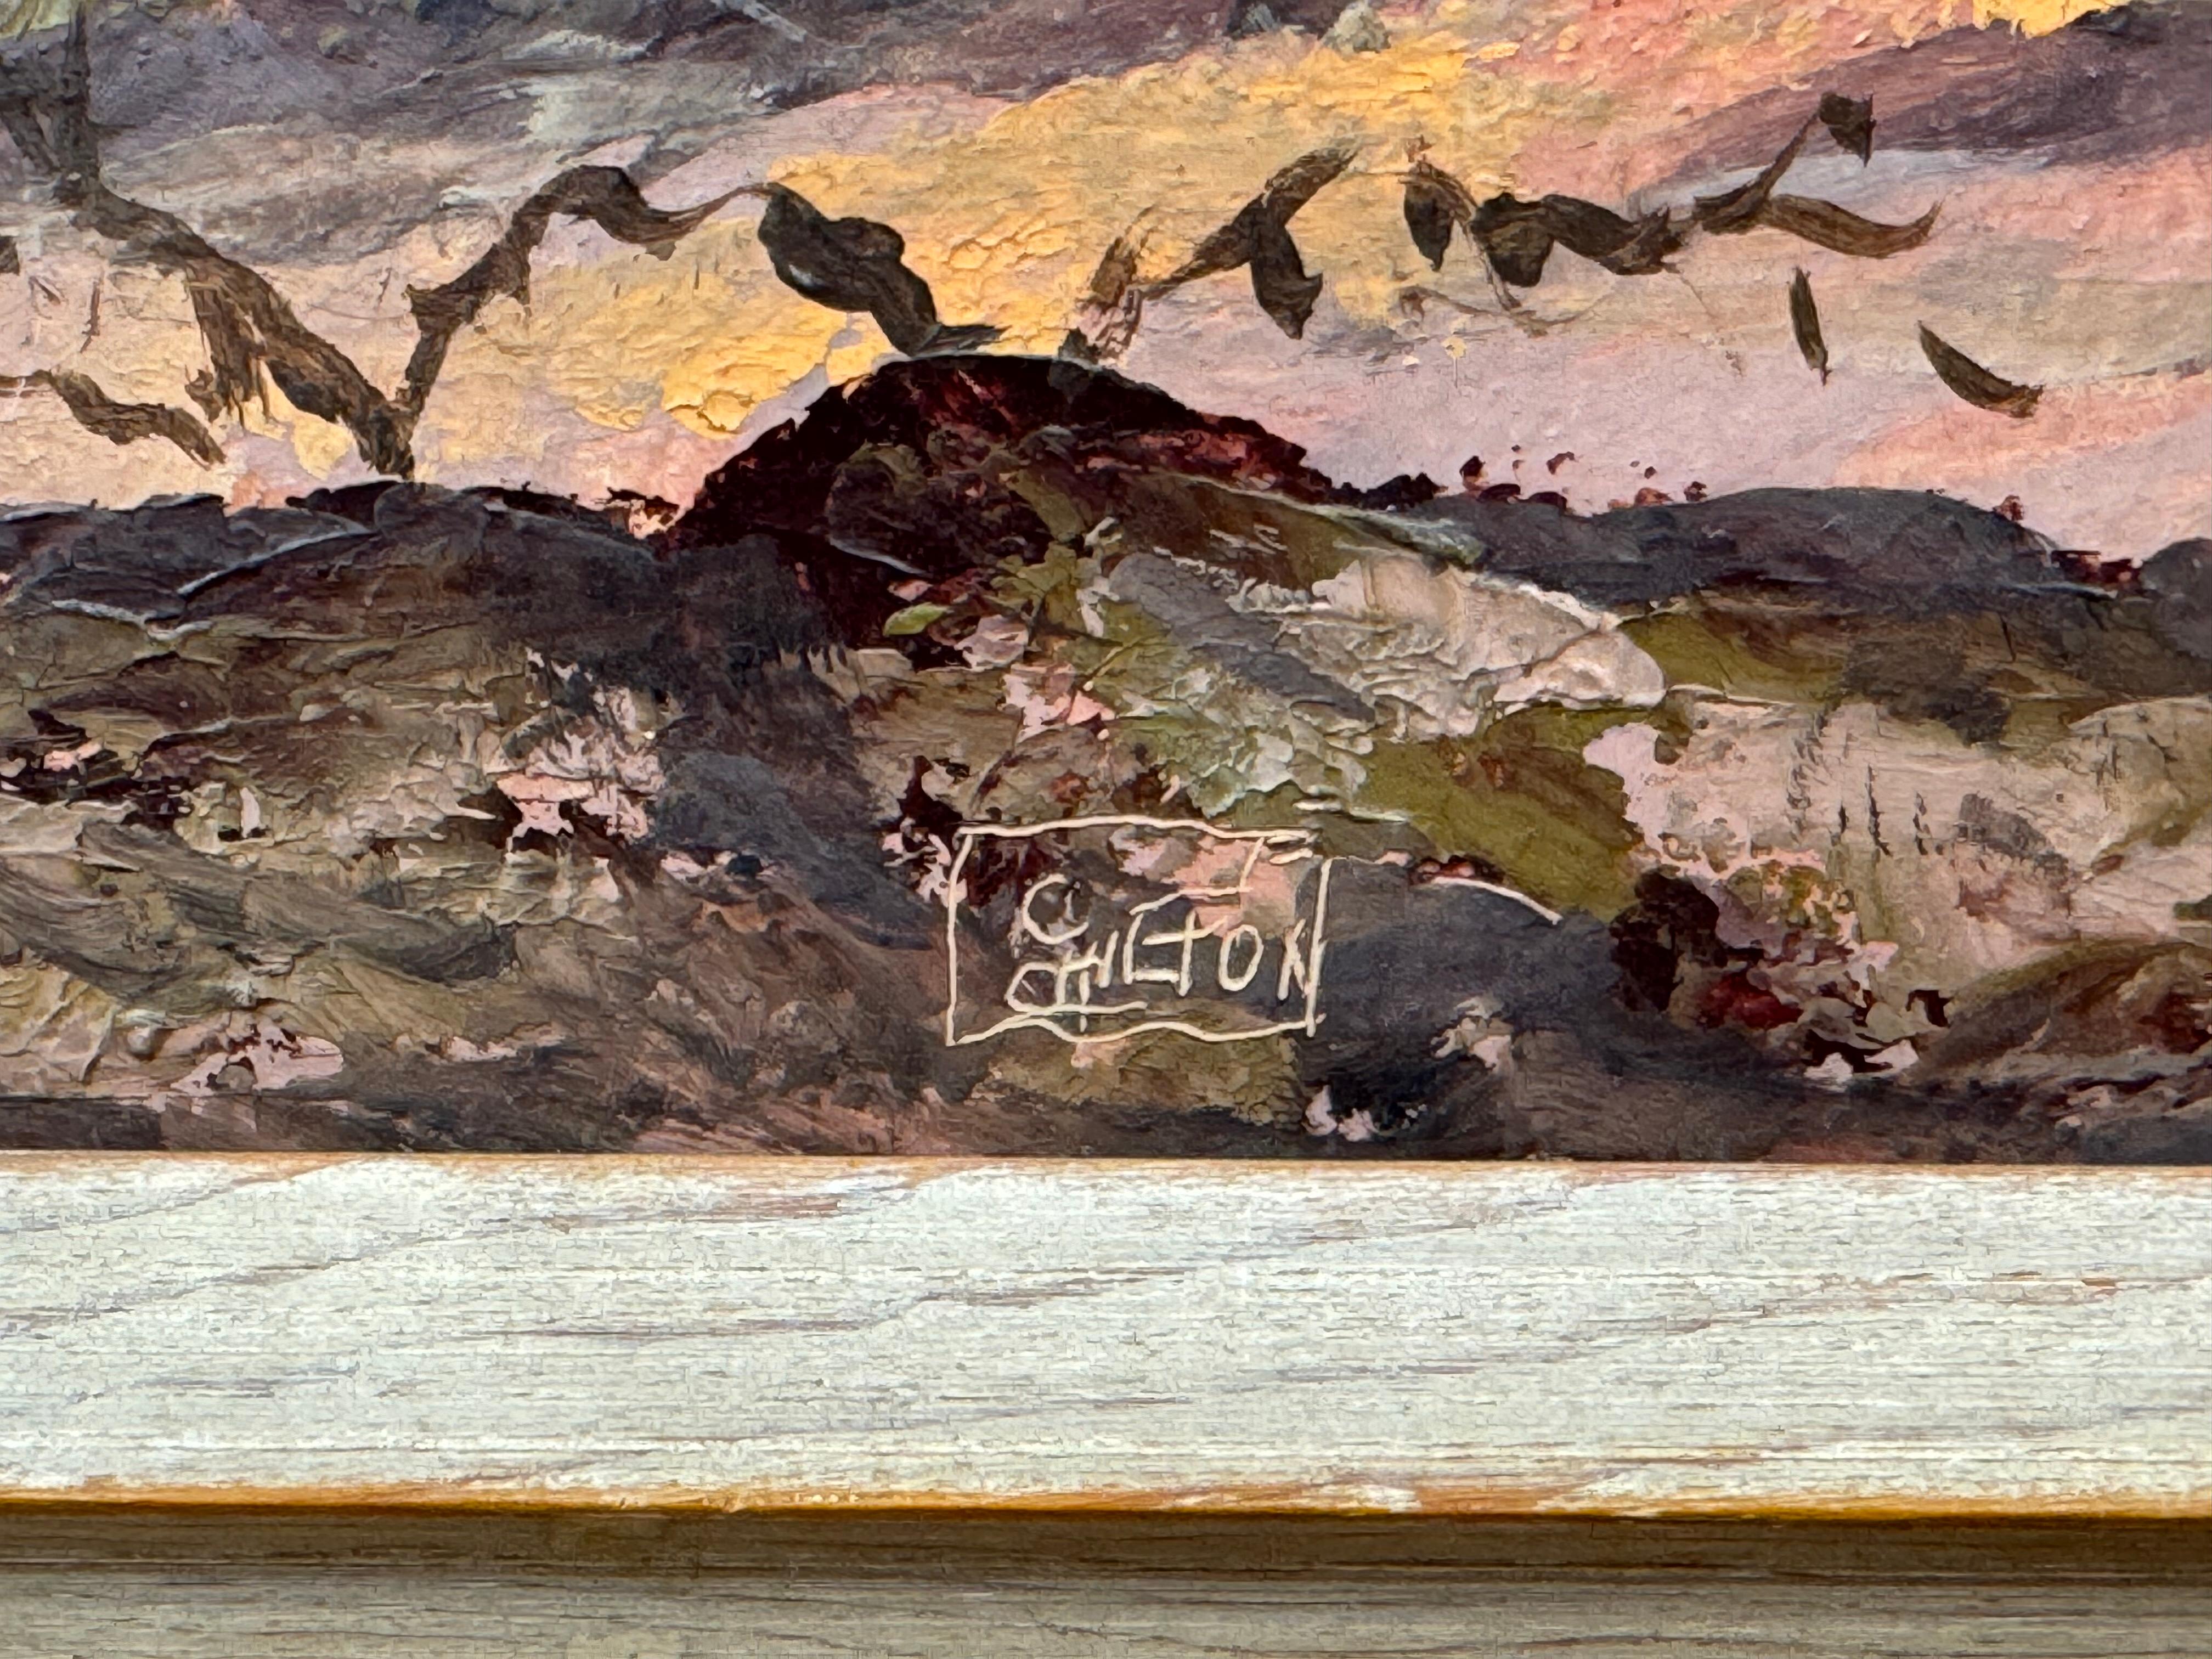 Desert mountain landscape painting. Oil on artist board. 12 x 24 unframed, 18 x 30 framed.